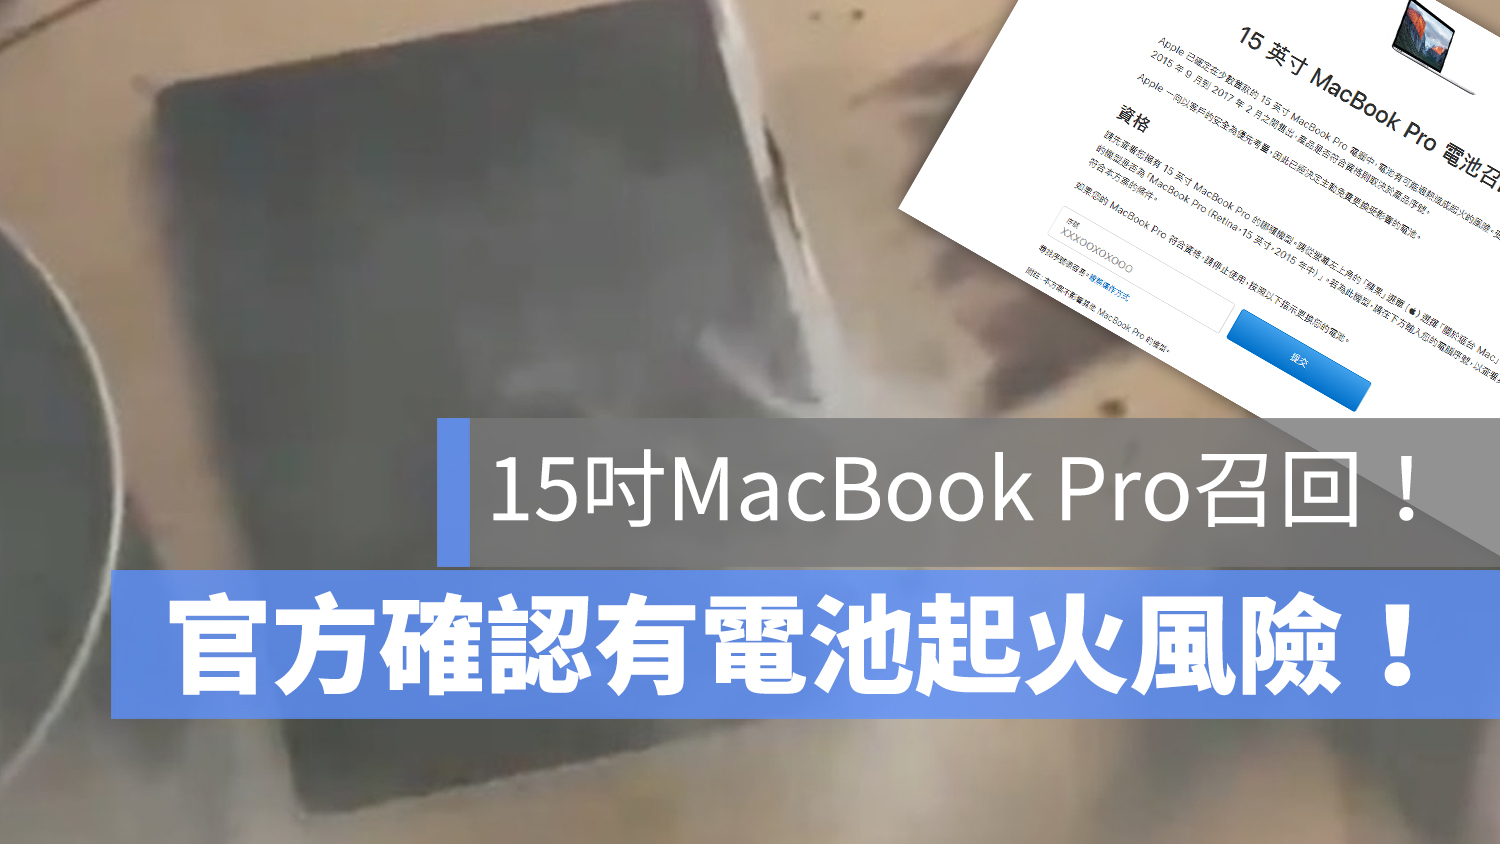 MacBook Pro 電池起火 召回